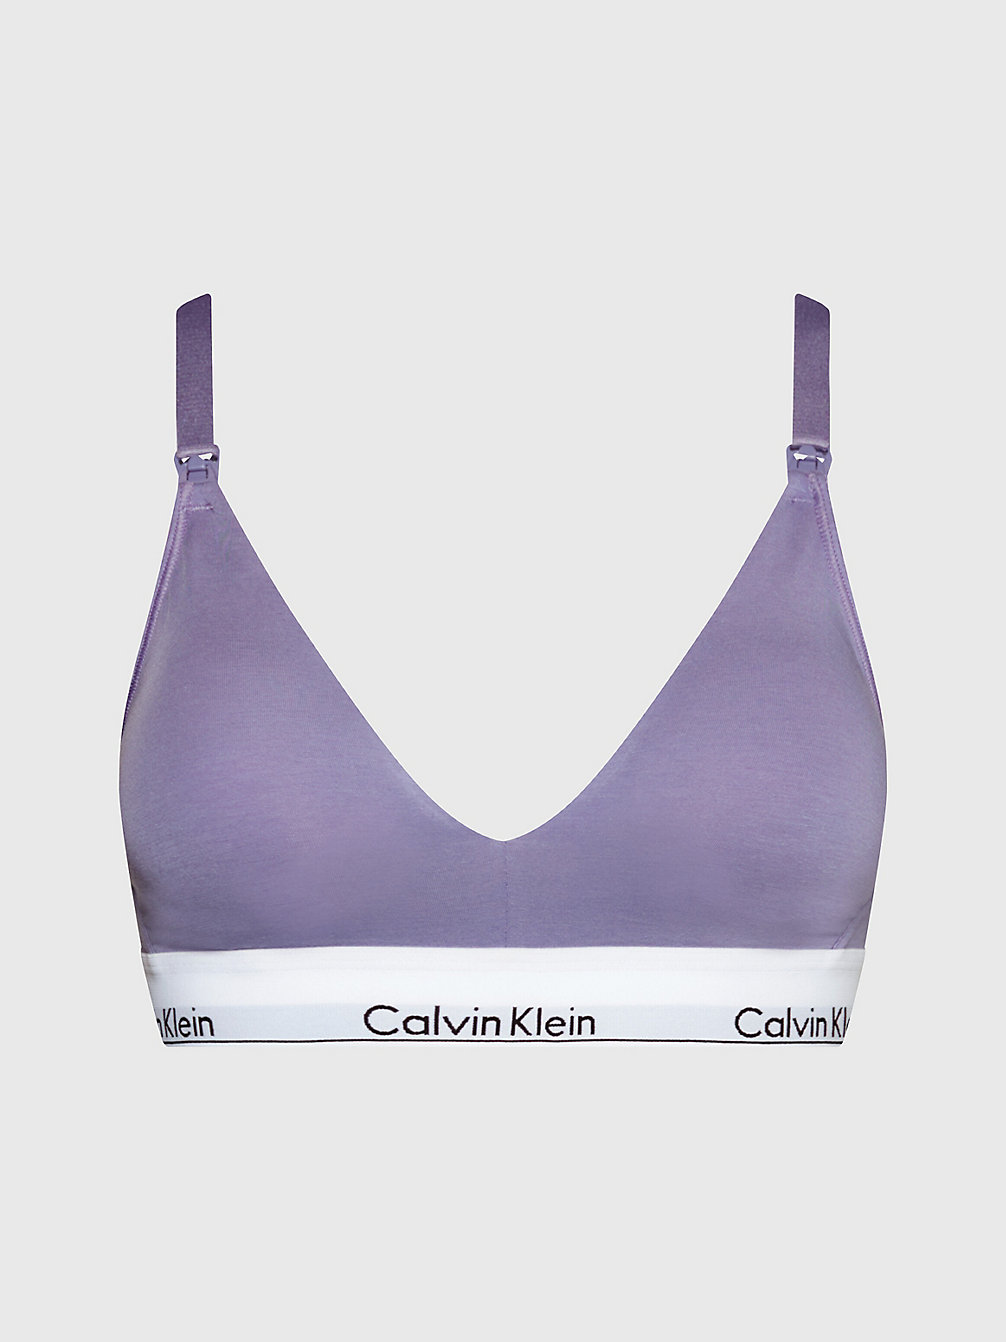 SPLASH OF GRAPE Schwangerschafts- Und Still-Bh - Modern Cotton undefined Damen Calvin Klein